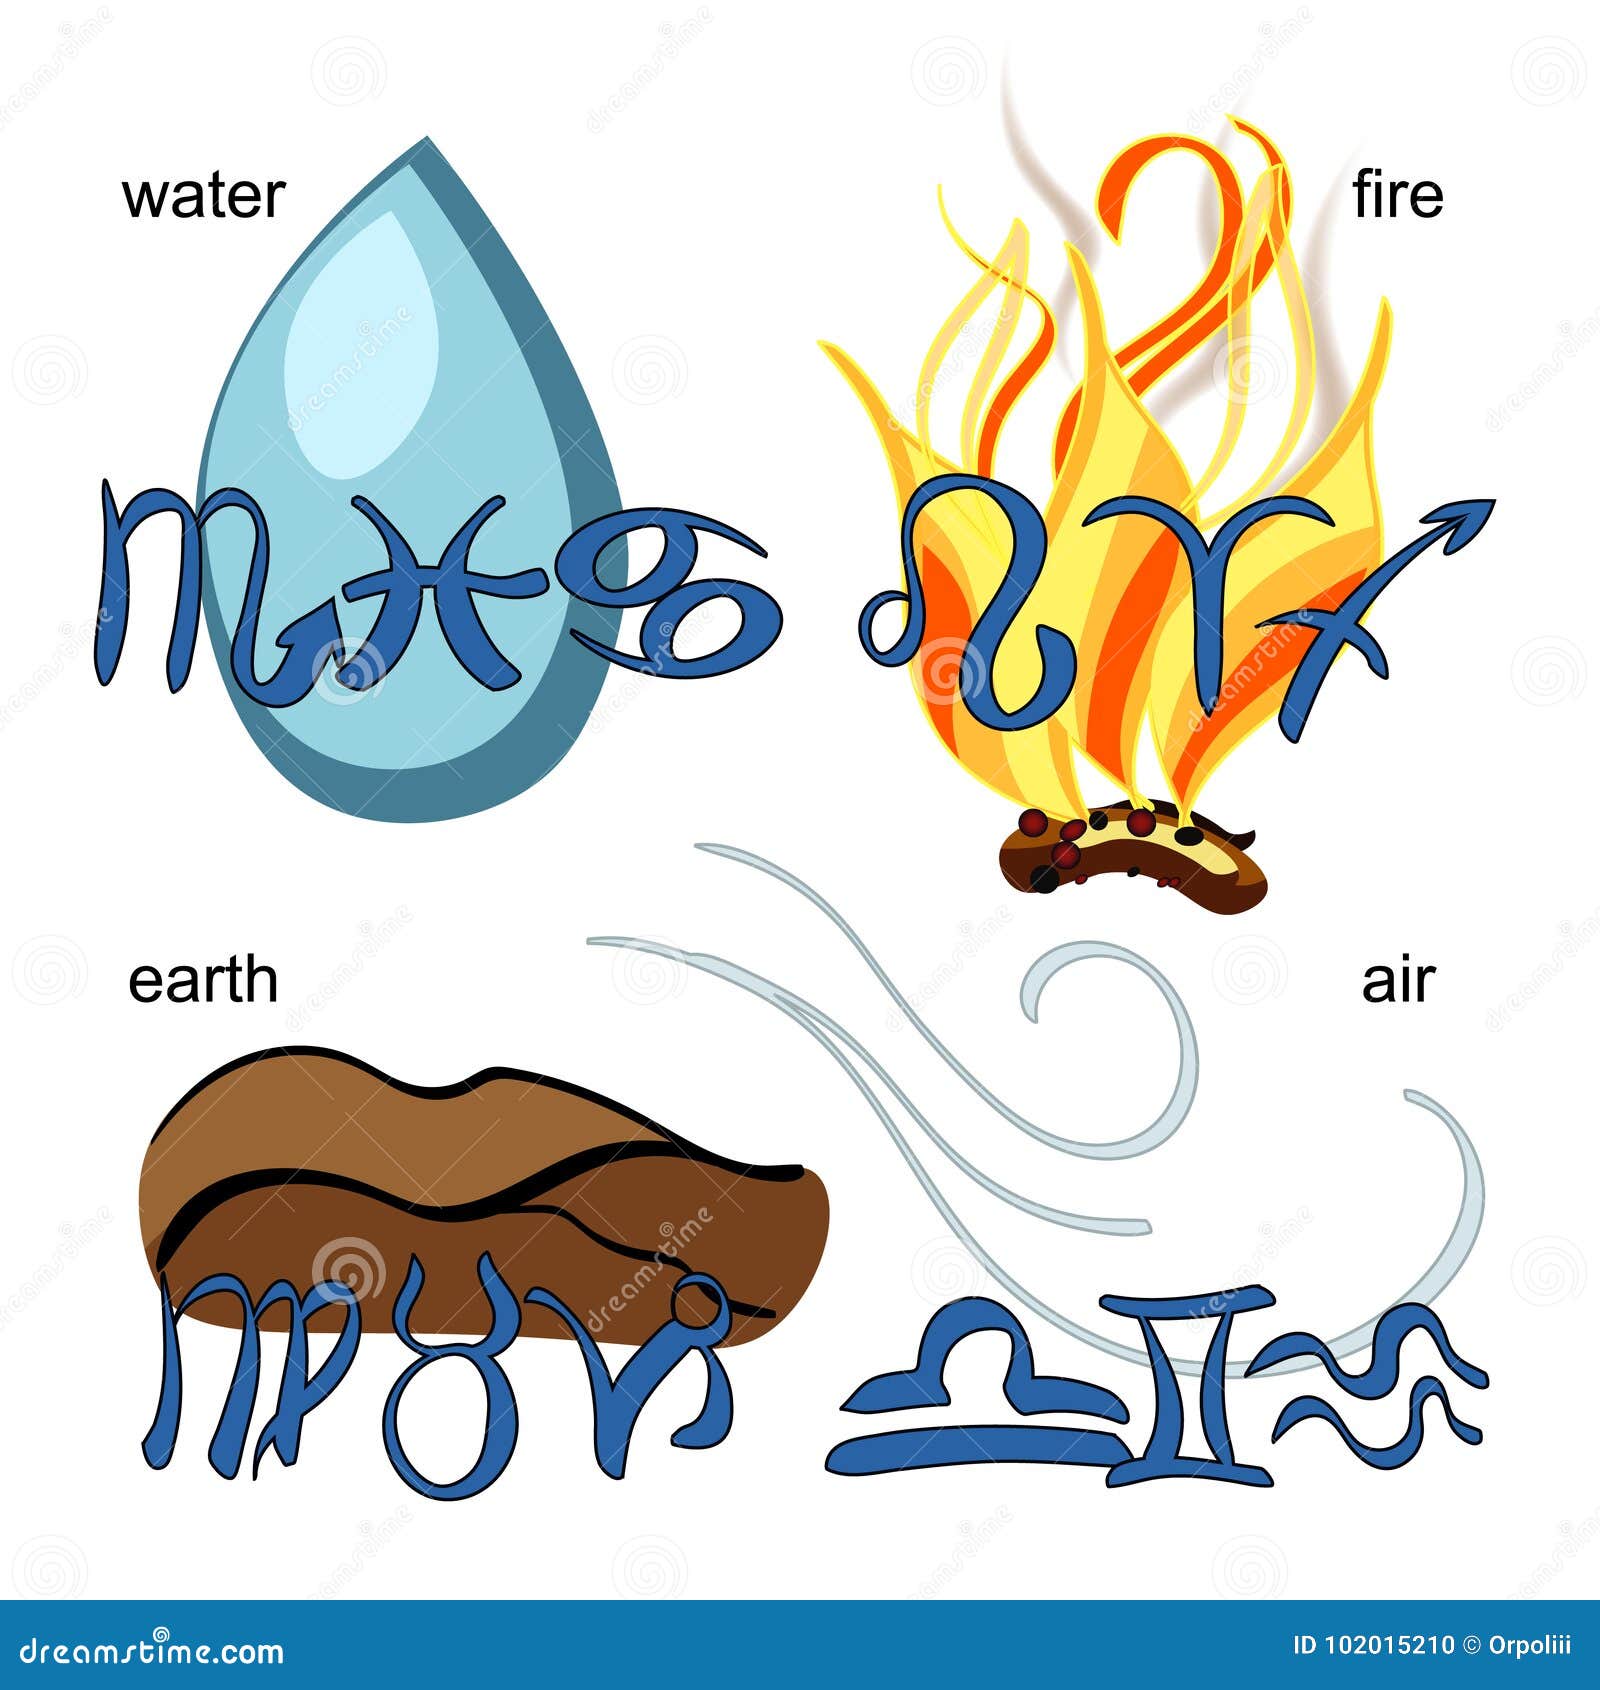 Воздушные зз огненные земные. Знаки зодиака огонь вода воздух земля. Огненные и воздушные знаки. Символы огня воды земли и воздуха. Земные воздушные Огненные водные знаки.